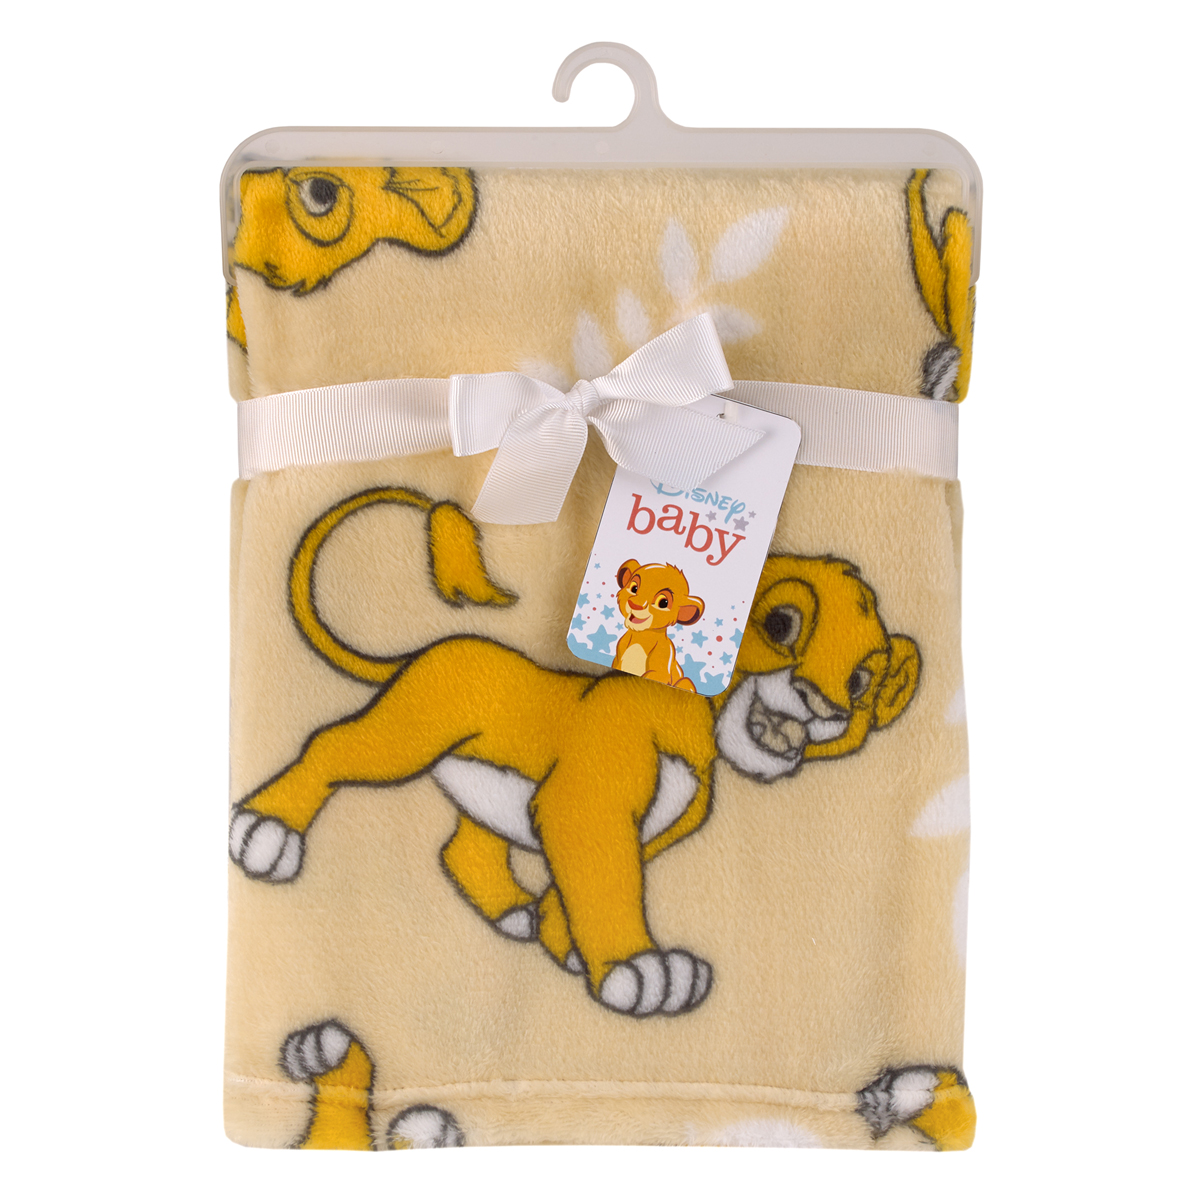 Disney Lion King Simba Baby Blanket